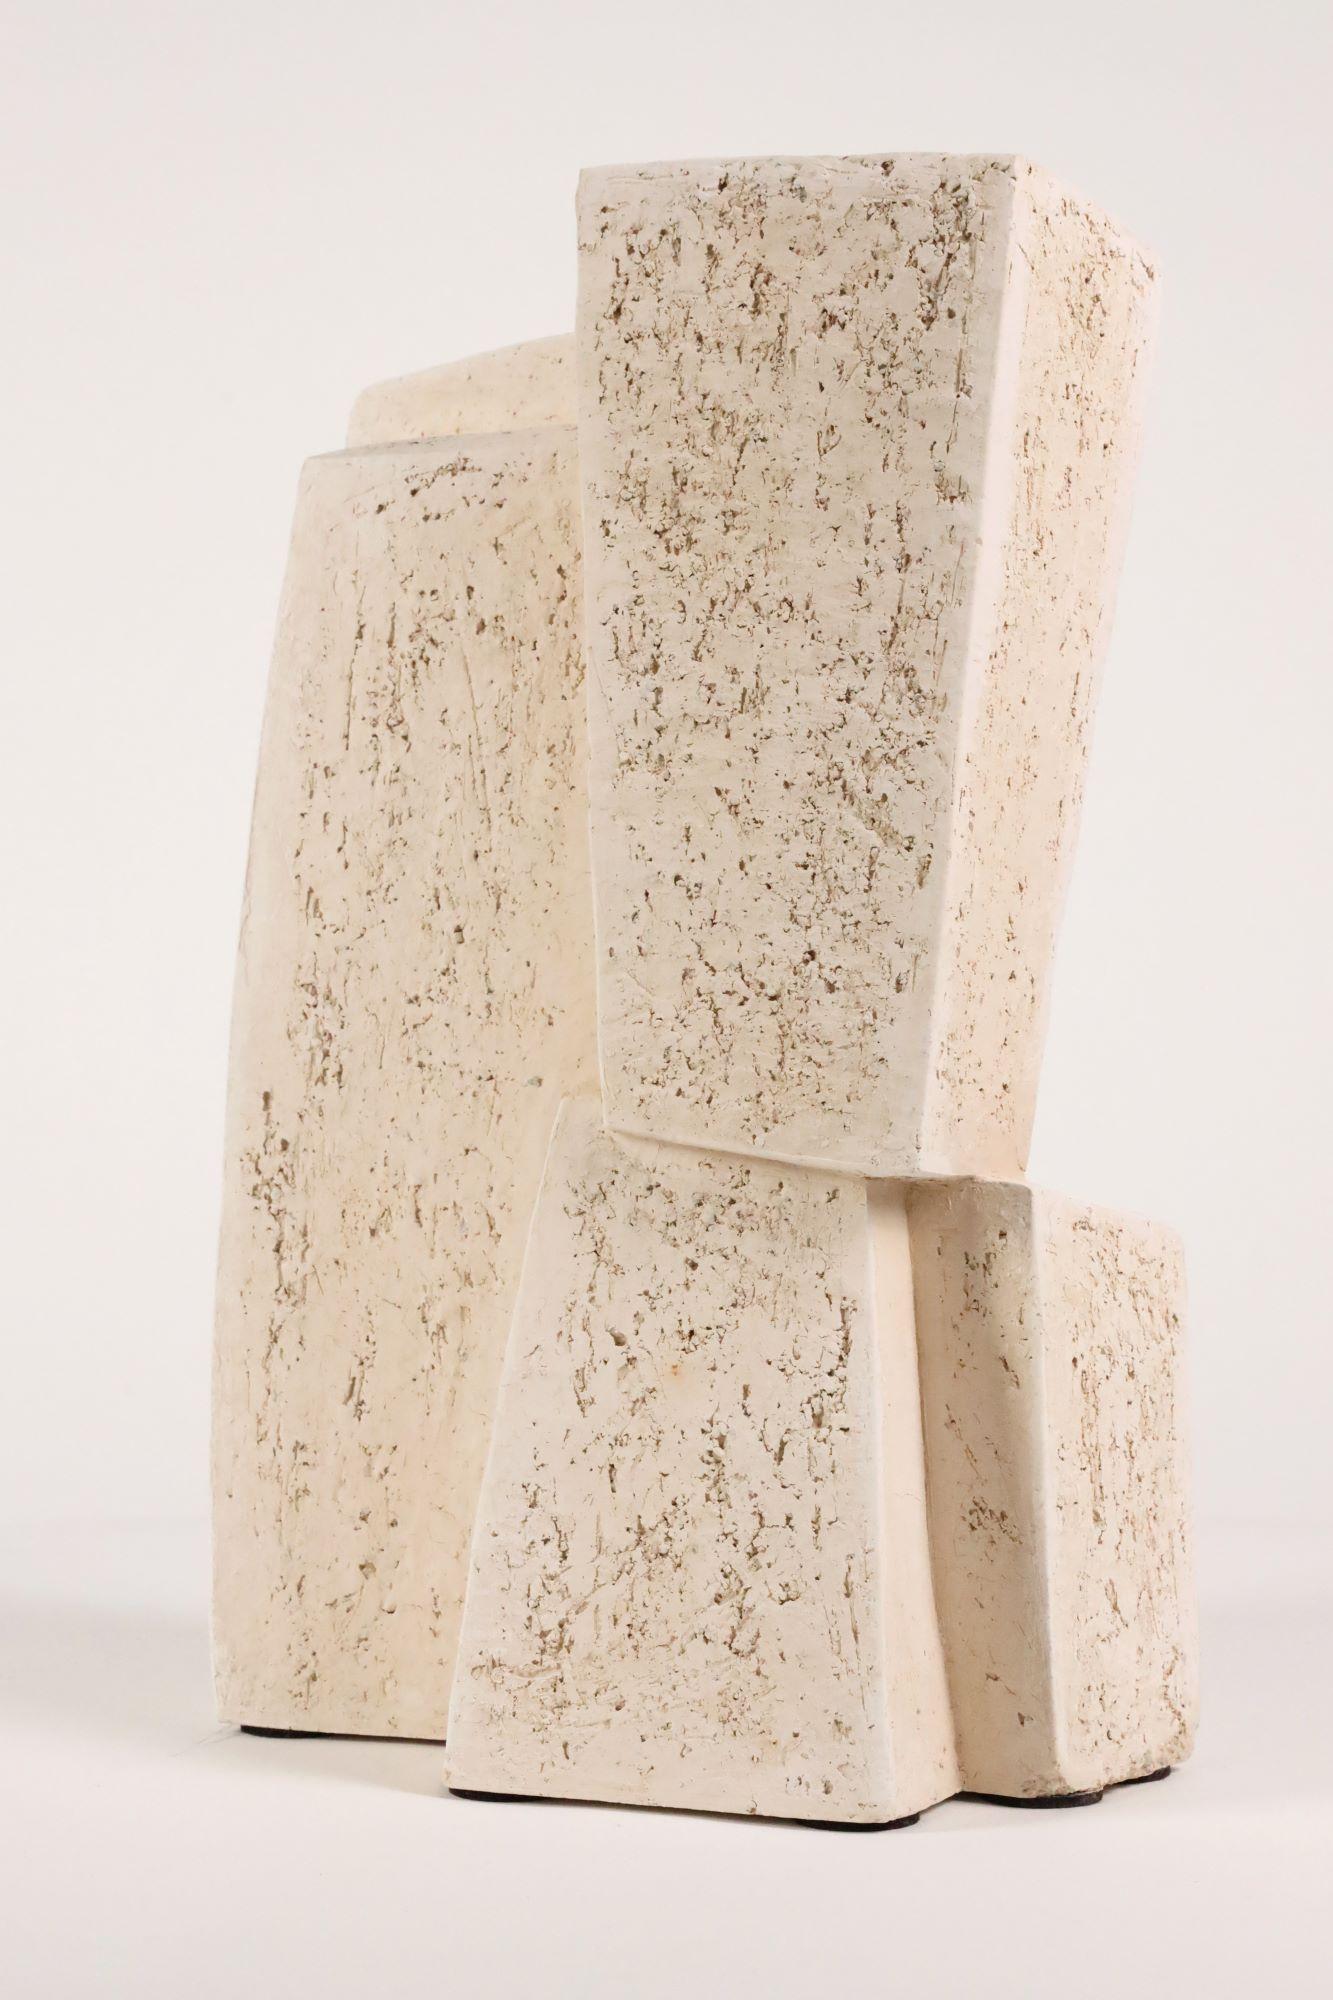 Union V de Delphine Brabant - Sculpture géométrique abstraite, terre cuite, blanche